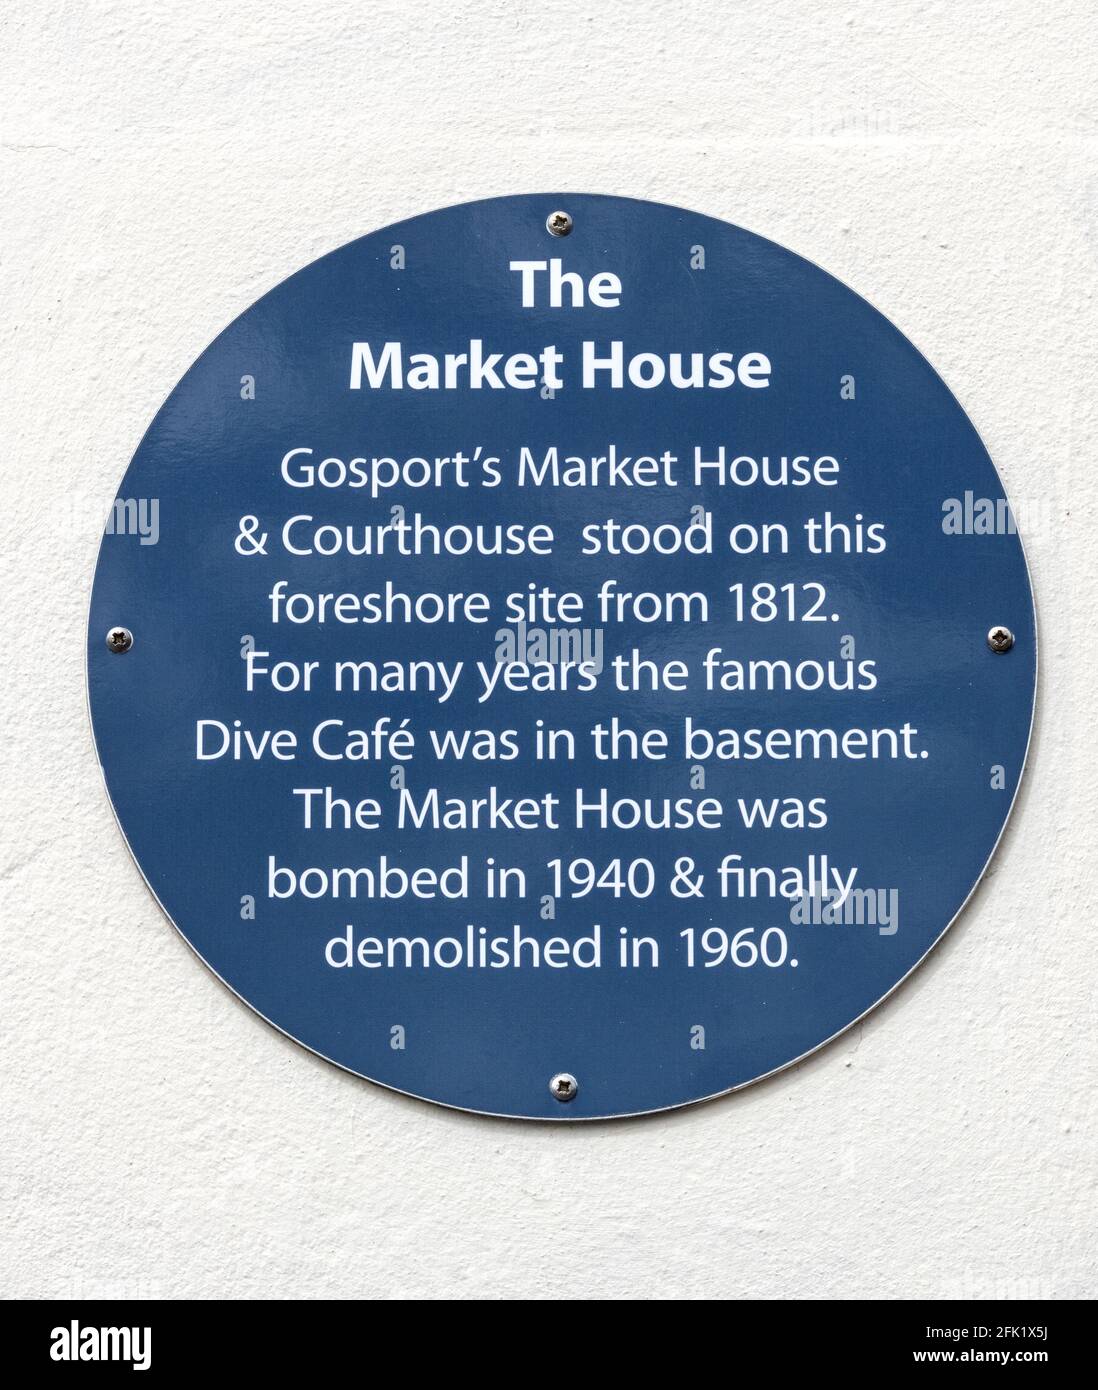 Plaque bleue du patrimoine sur le site de l'ancienne Market House Mumby Road, Gosport, Hampshire, Angleterre, Royaume-Uni Banque D'Images